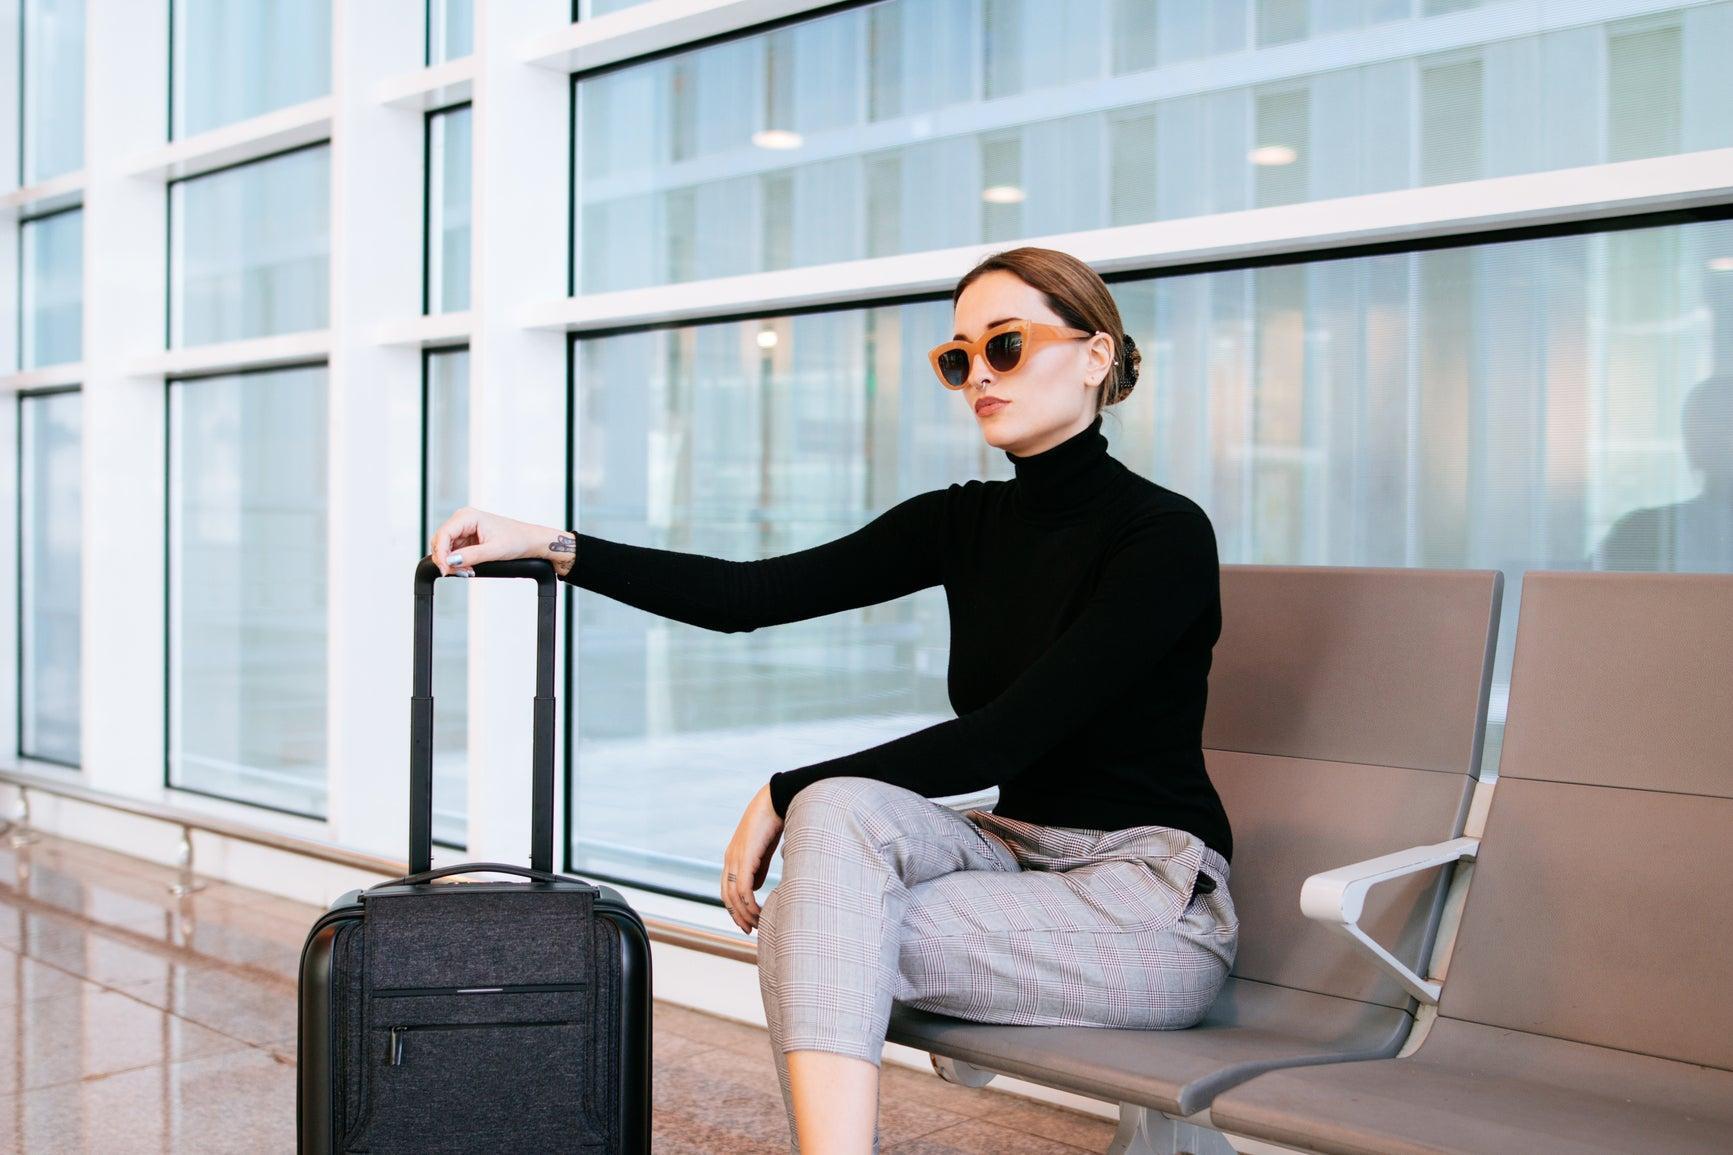 mujer sentada con maleta y gafas